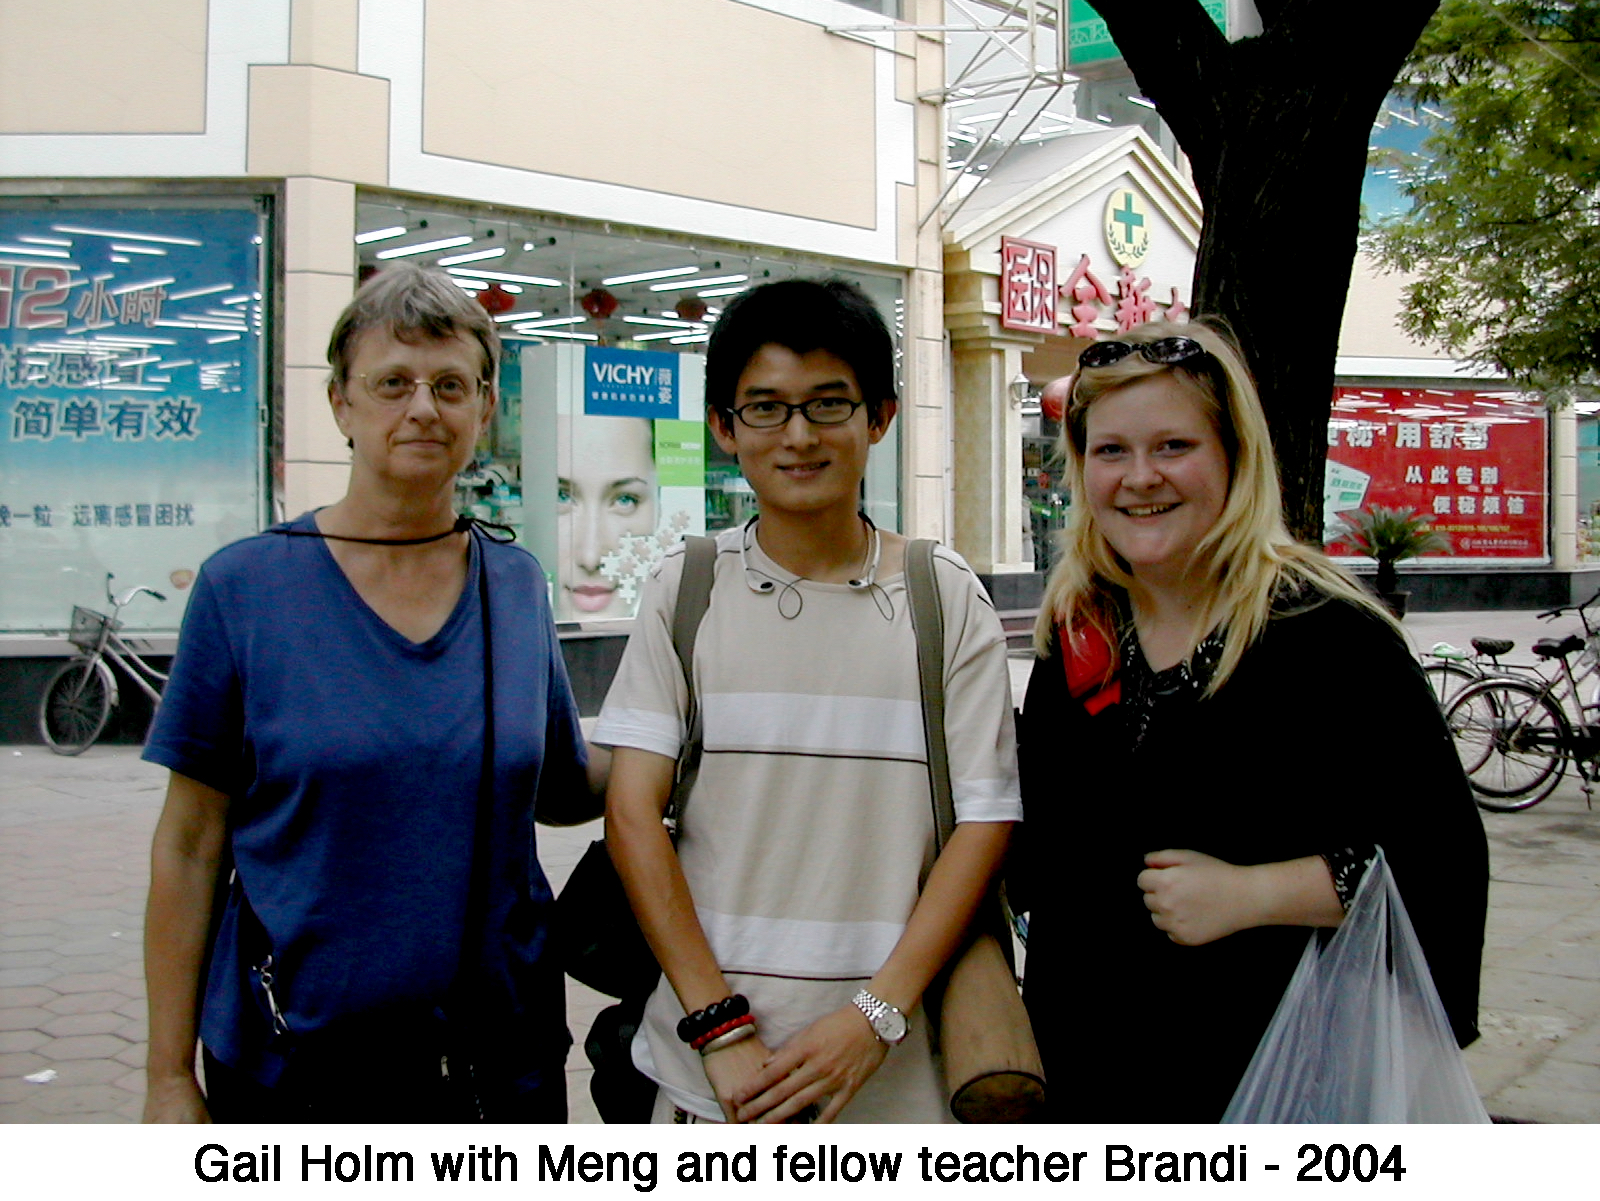 Gail Holm, helper Meng, and fellow teacher Brandi standing on a street